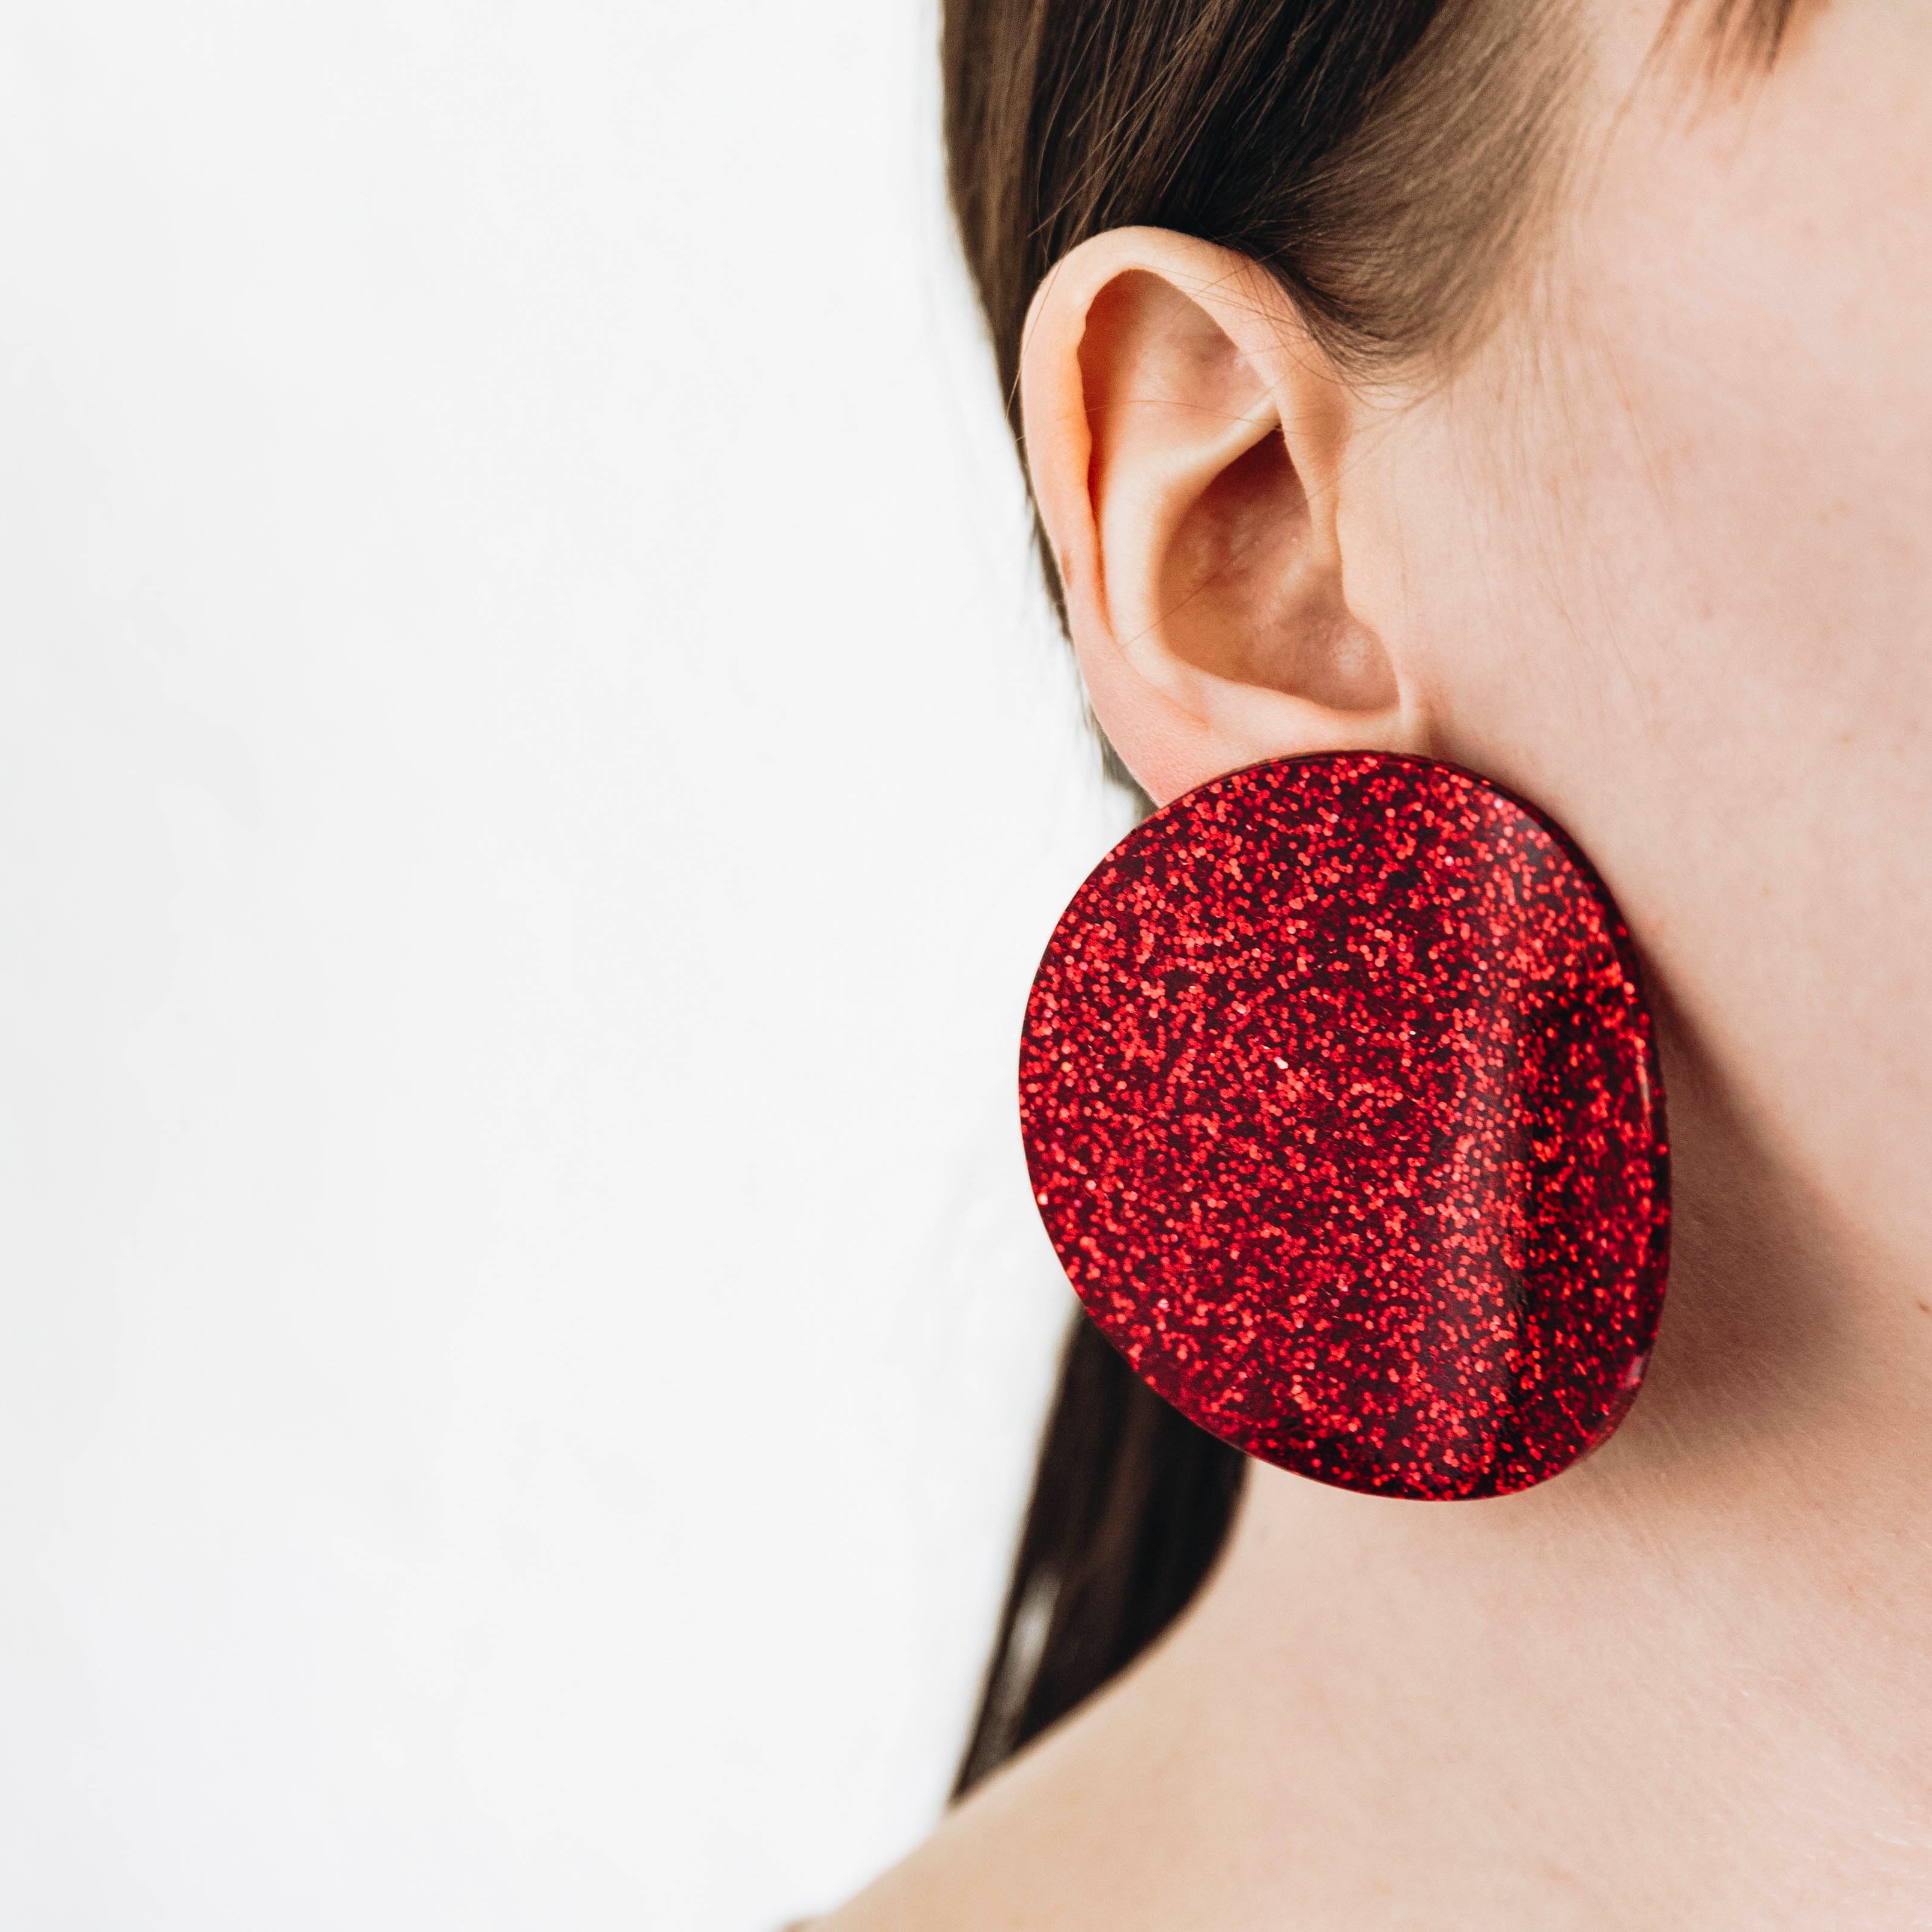 Ruby earrings